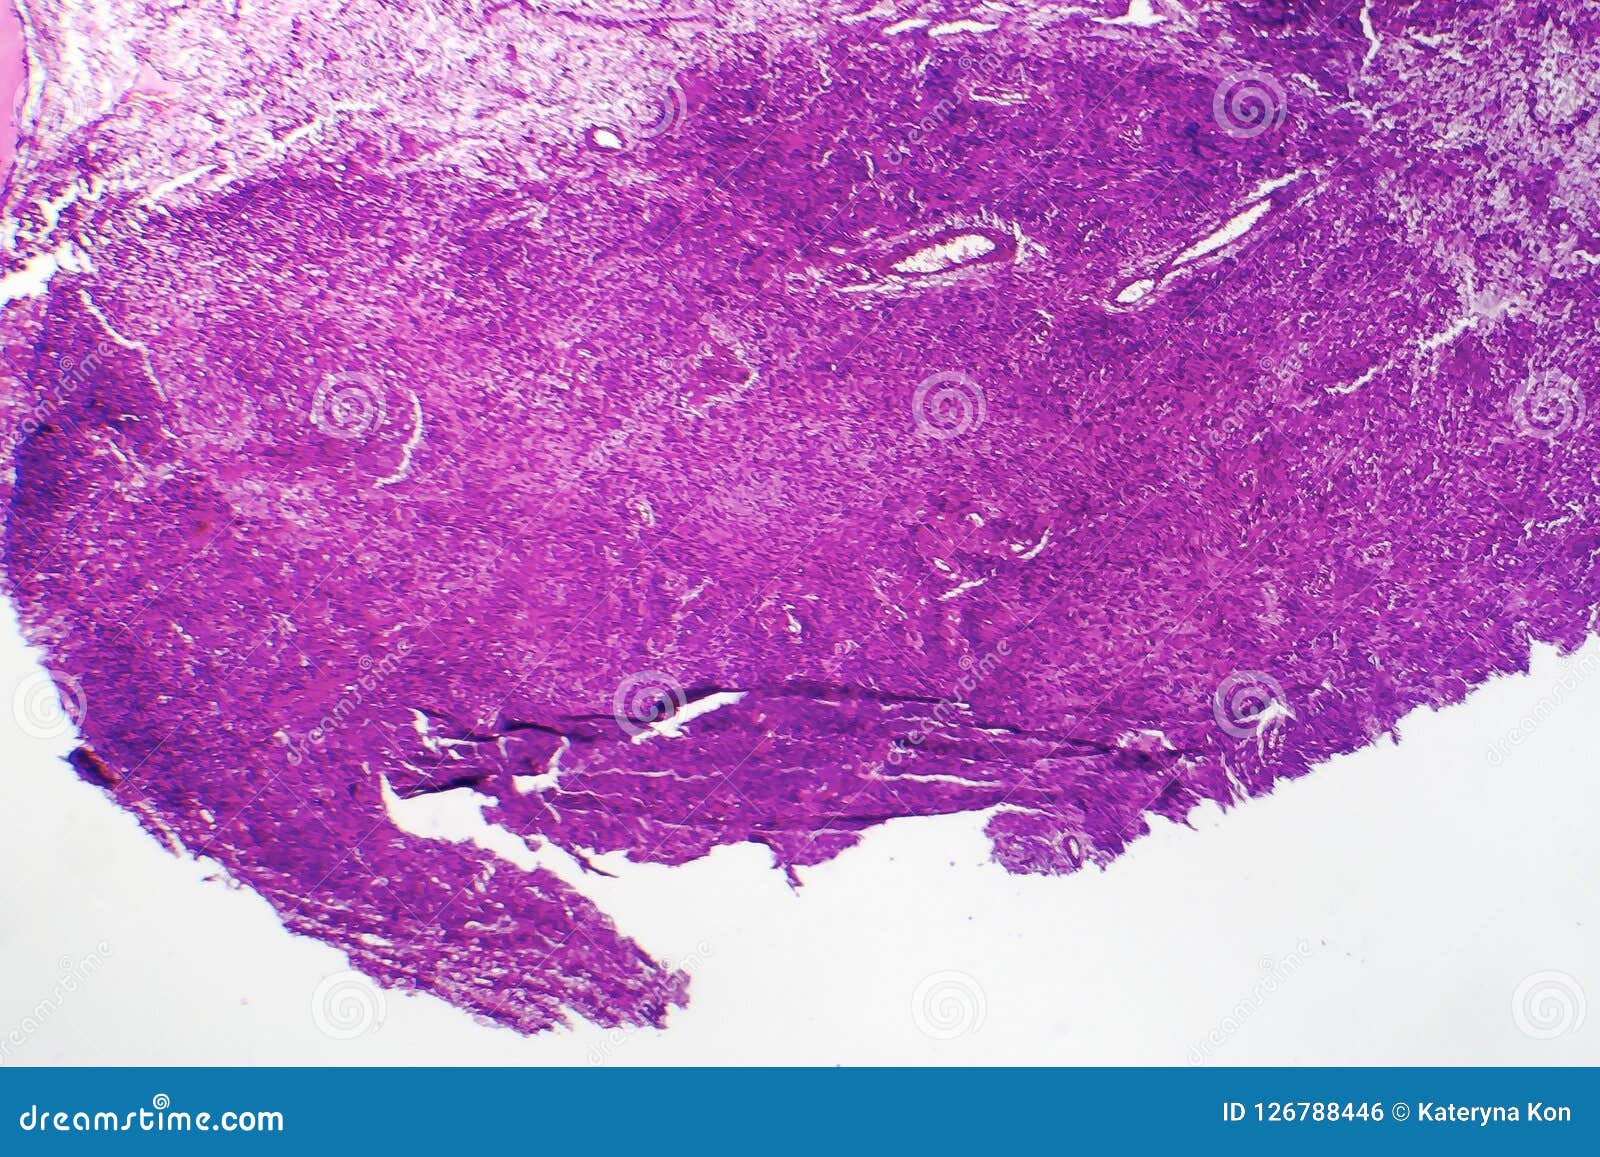 fibrosarcoma, malignant tumor of fibroblasts